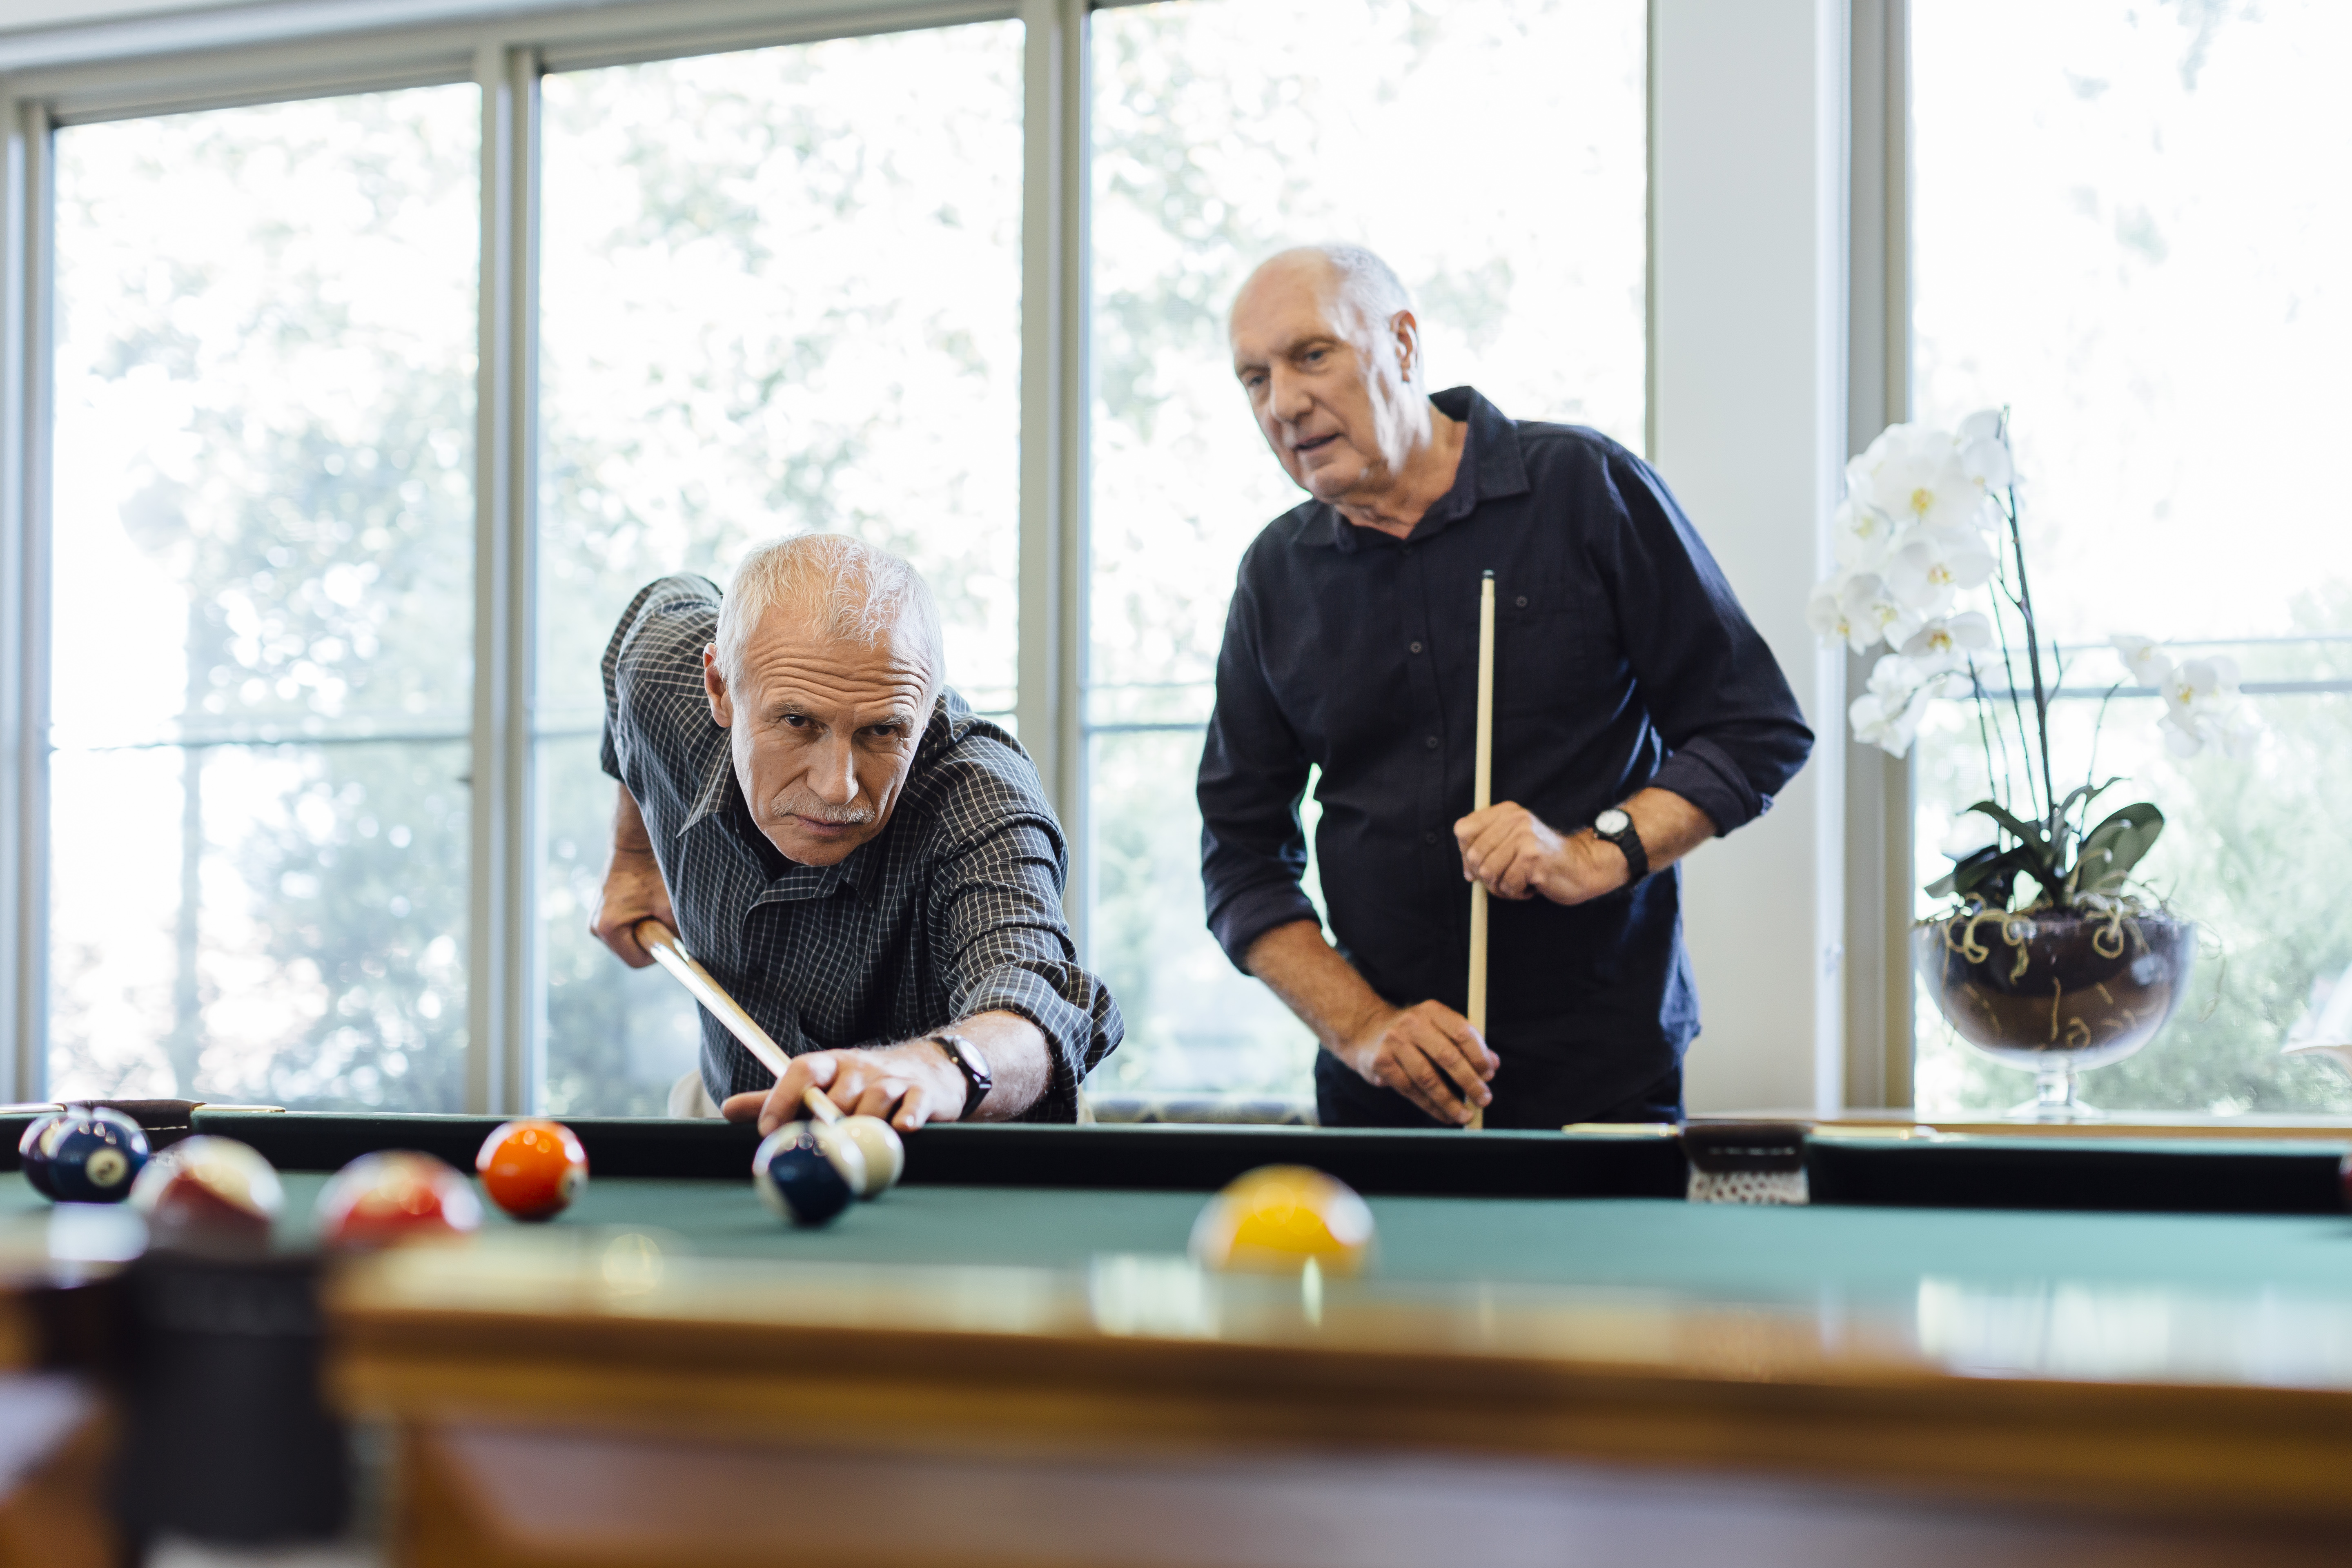 Elderly men playing pool